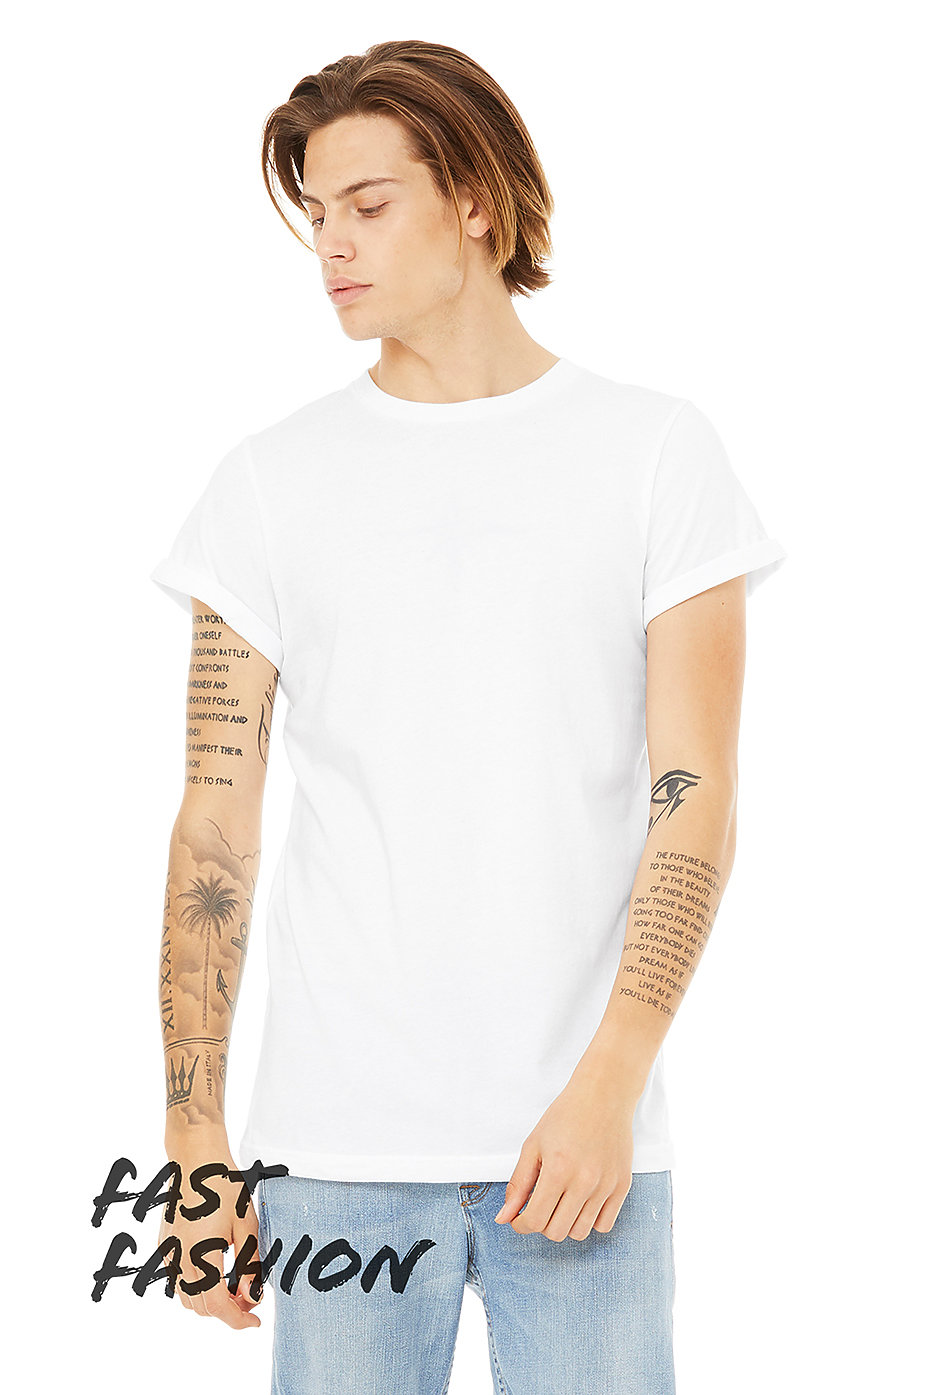 Unisex T Shirts | Fast Fashion | Mens Wholesale Clothing ...